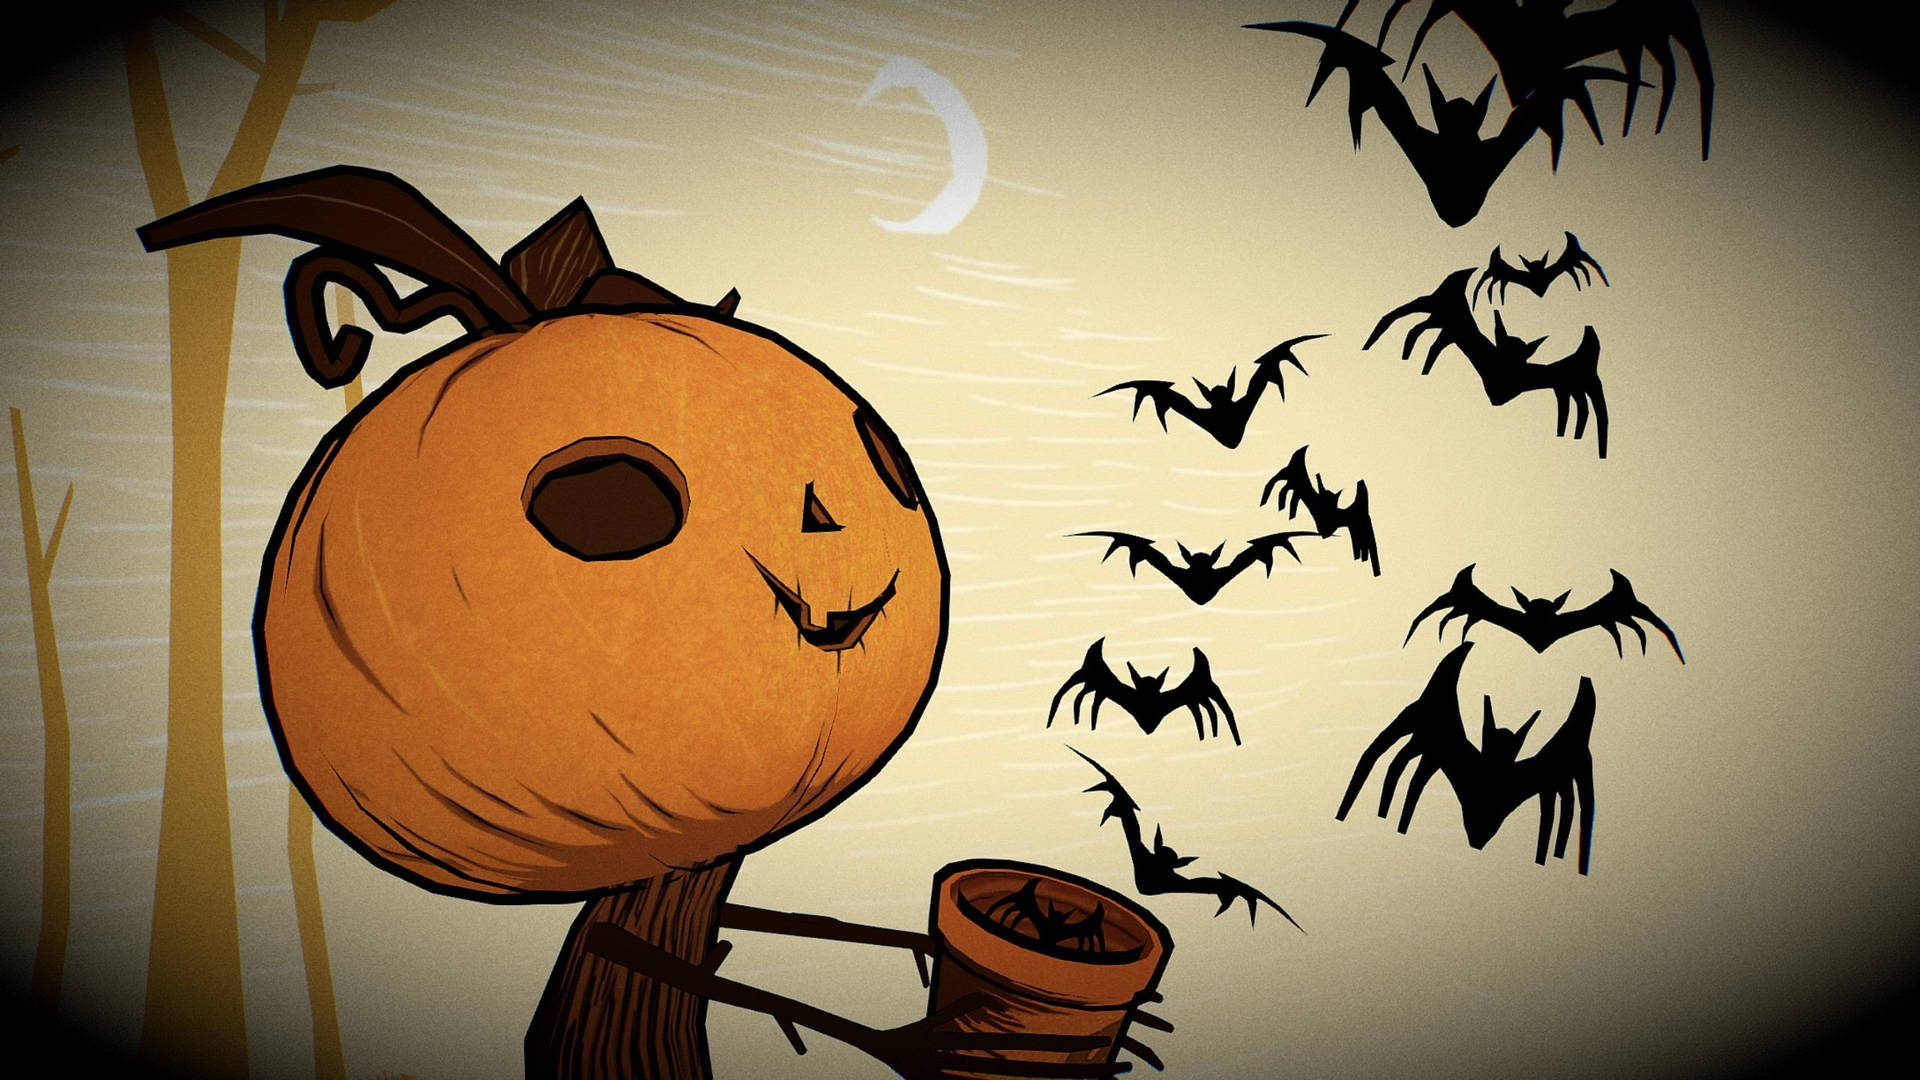 A Cartoon Pumpkin With Bats Flying Around It Wallpaper